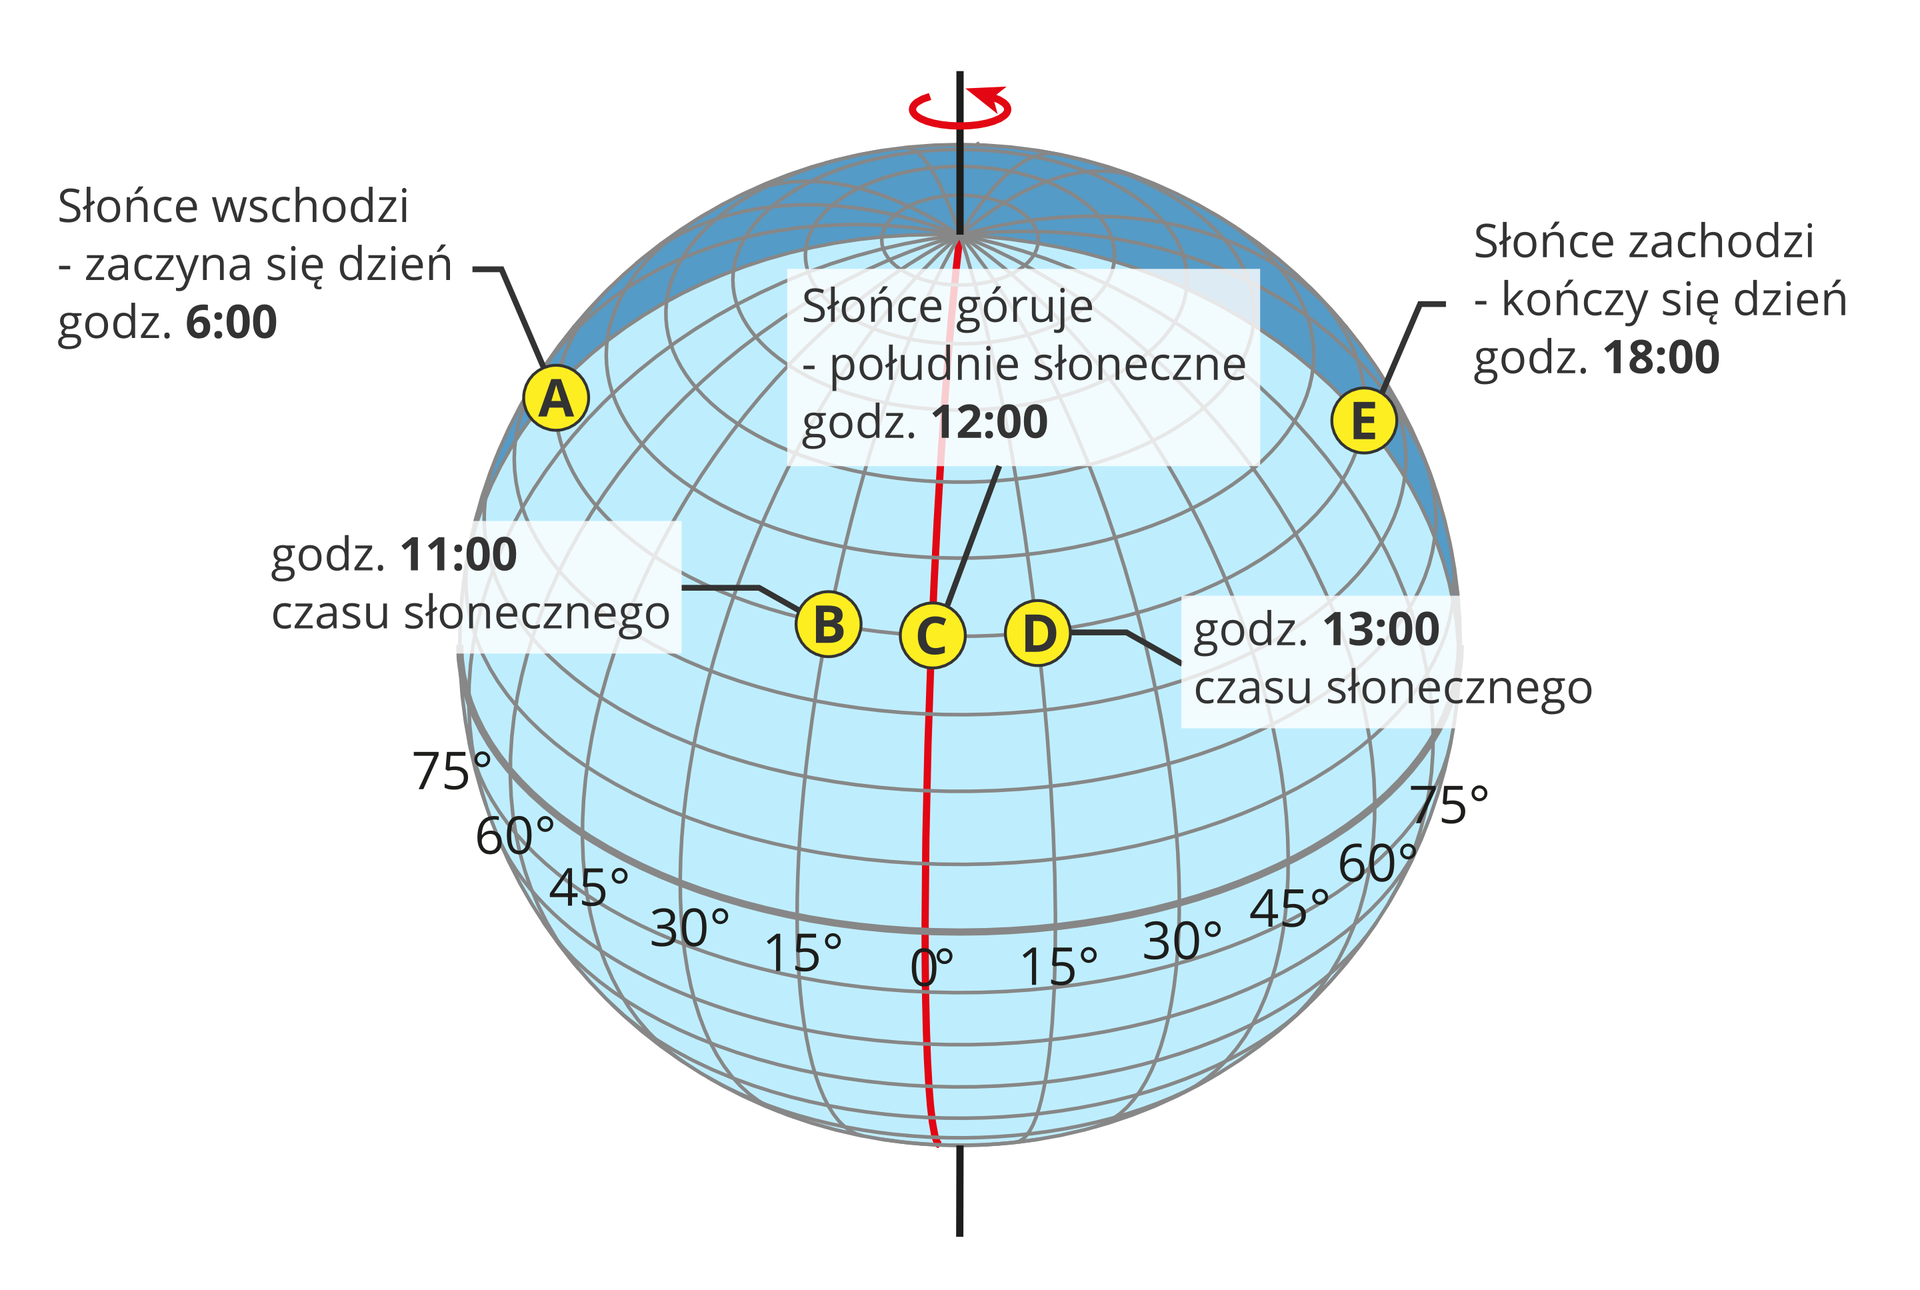 Ilustracja przedstawia glob ziemski. Całą powierzchnię globu pokrywają linie południków i równoleżników. Czarna pionowa linia wyznacza oś Ziemi. Czarna linia równika dzieli glob na część południową i północną. Pionowe linie południków oddalone są od siebie co piętnaście stopni. W części północnej globu wyznaczone są godziny czasu słonecznego. Wzdłuż równoleżnika powyżej równika, znajdują się punkty A, B, C, D i E. Punkty leżą na tej samej linii równoleżnika. Punkt A na lewej półkuli. Słońce wschodzi, zaczyna się dzień o godzinie 6. Punkt B, bliżej południka zerowego. Godzina jedenasta czasu słonecznego. Punkt C na południku zerowym. Słońce góruje, południe słoneczne; godzina dwunasta. Na prawo od południka, punkt D. Godzina trzynasta czasu słonecznego. Punkt E, oddalony od południka zerowego. Słońce zachodzi, godzina osiemnasta czasu słonecznego.